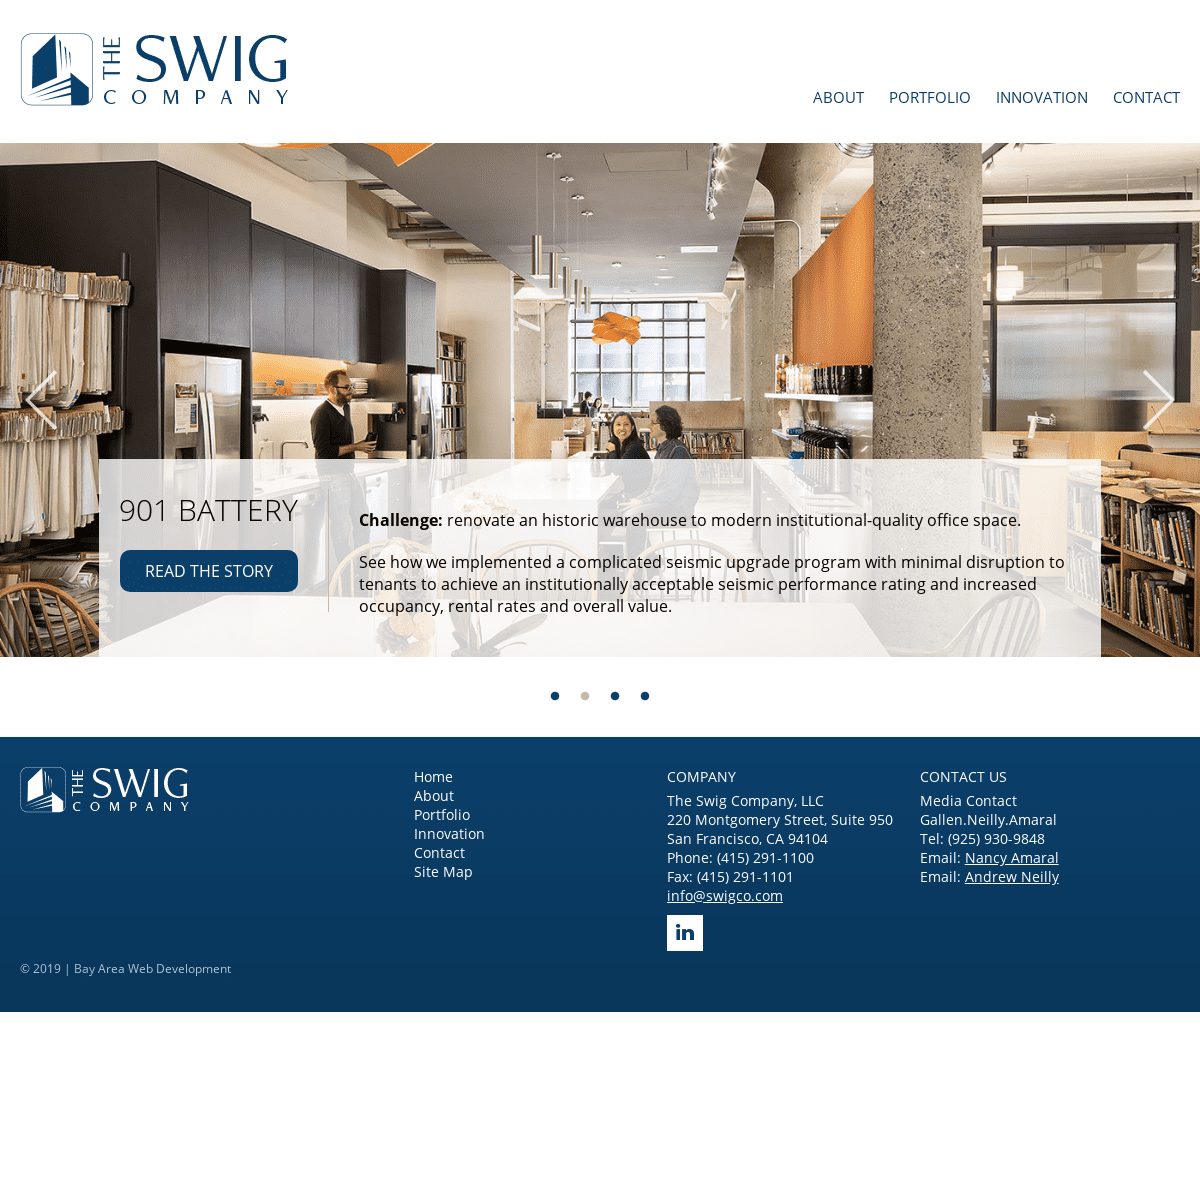 The Swig Company, LLC